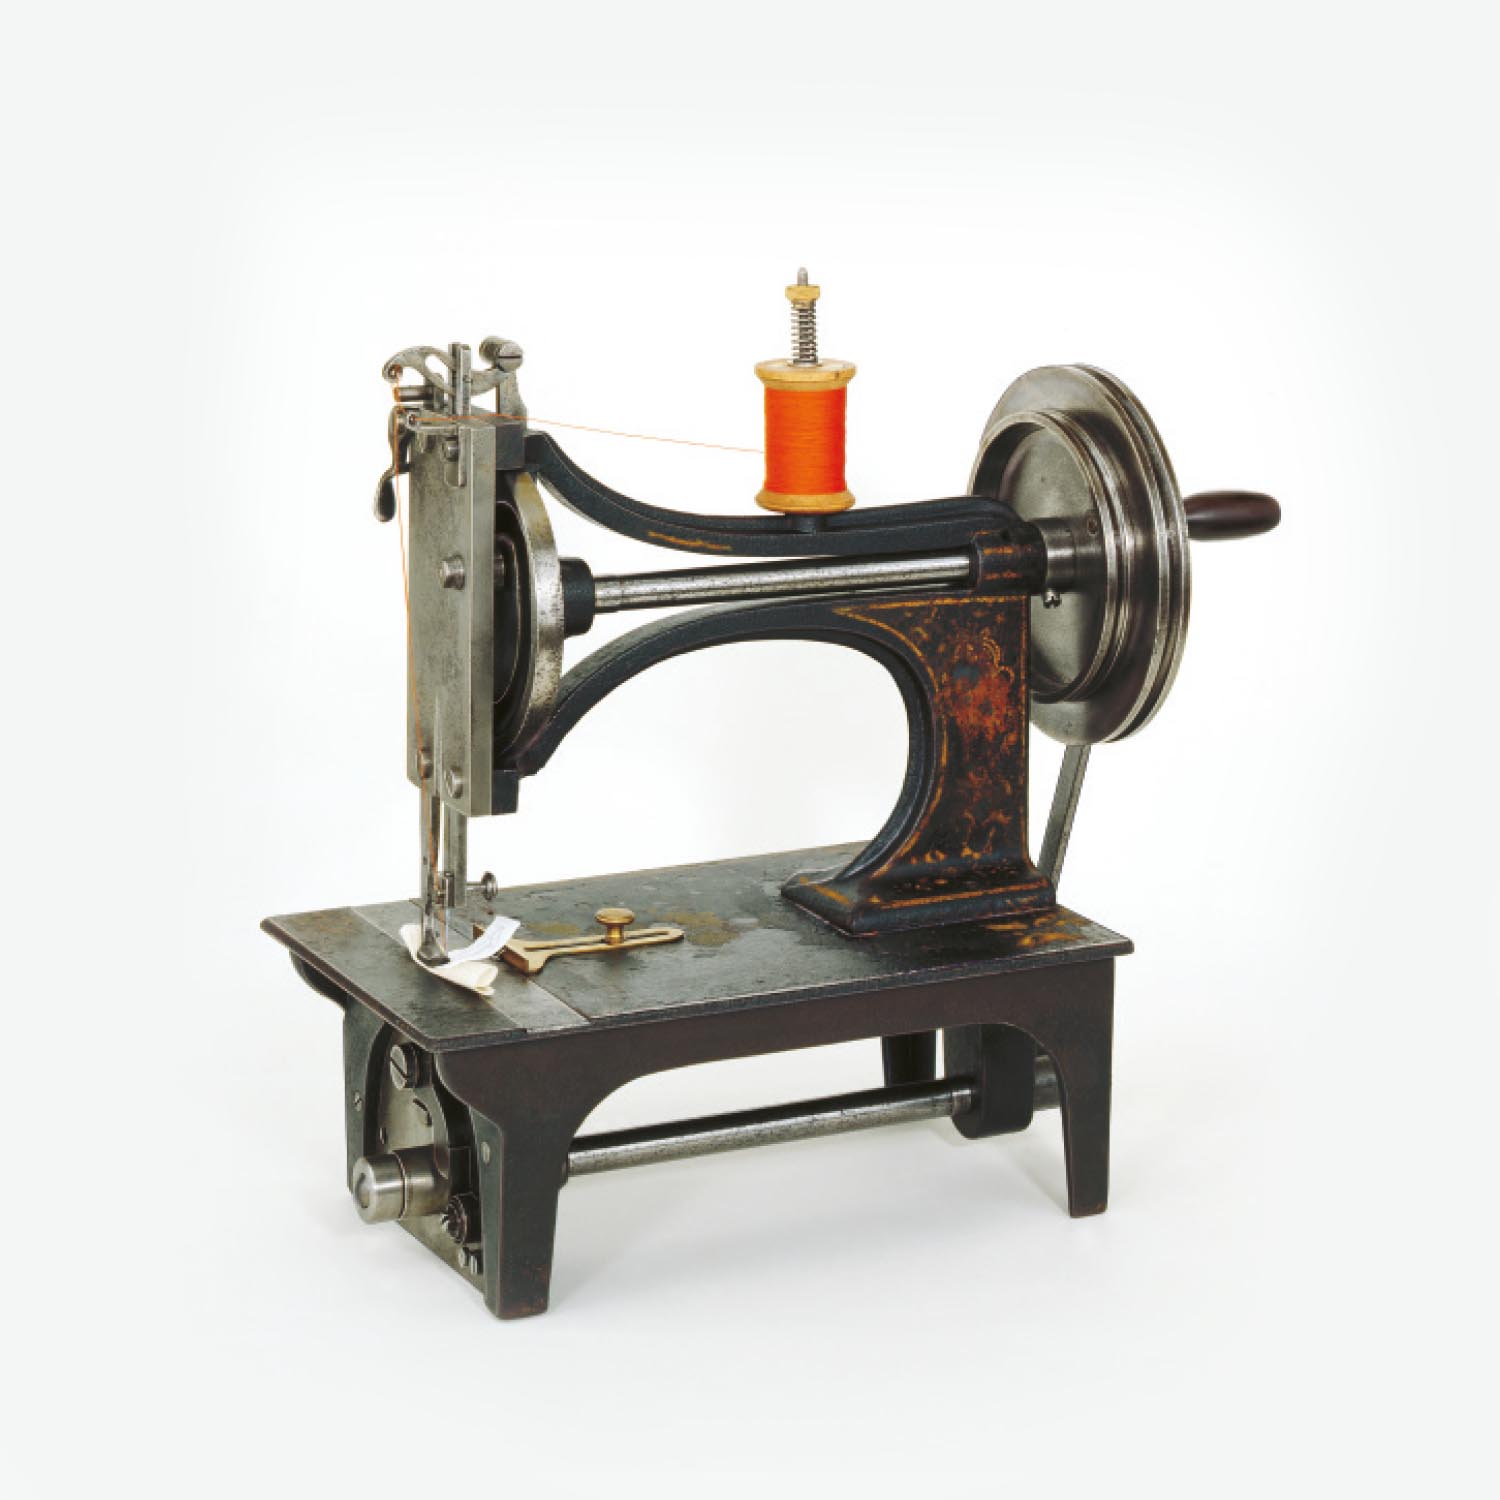 Platz & Rexrodt sewing machine | mey®